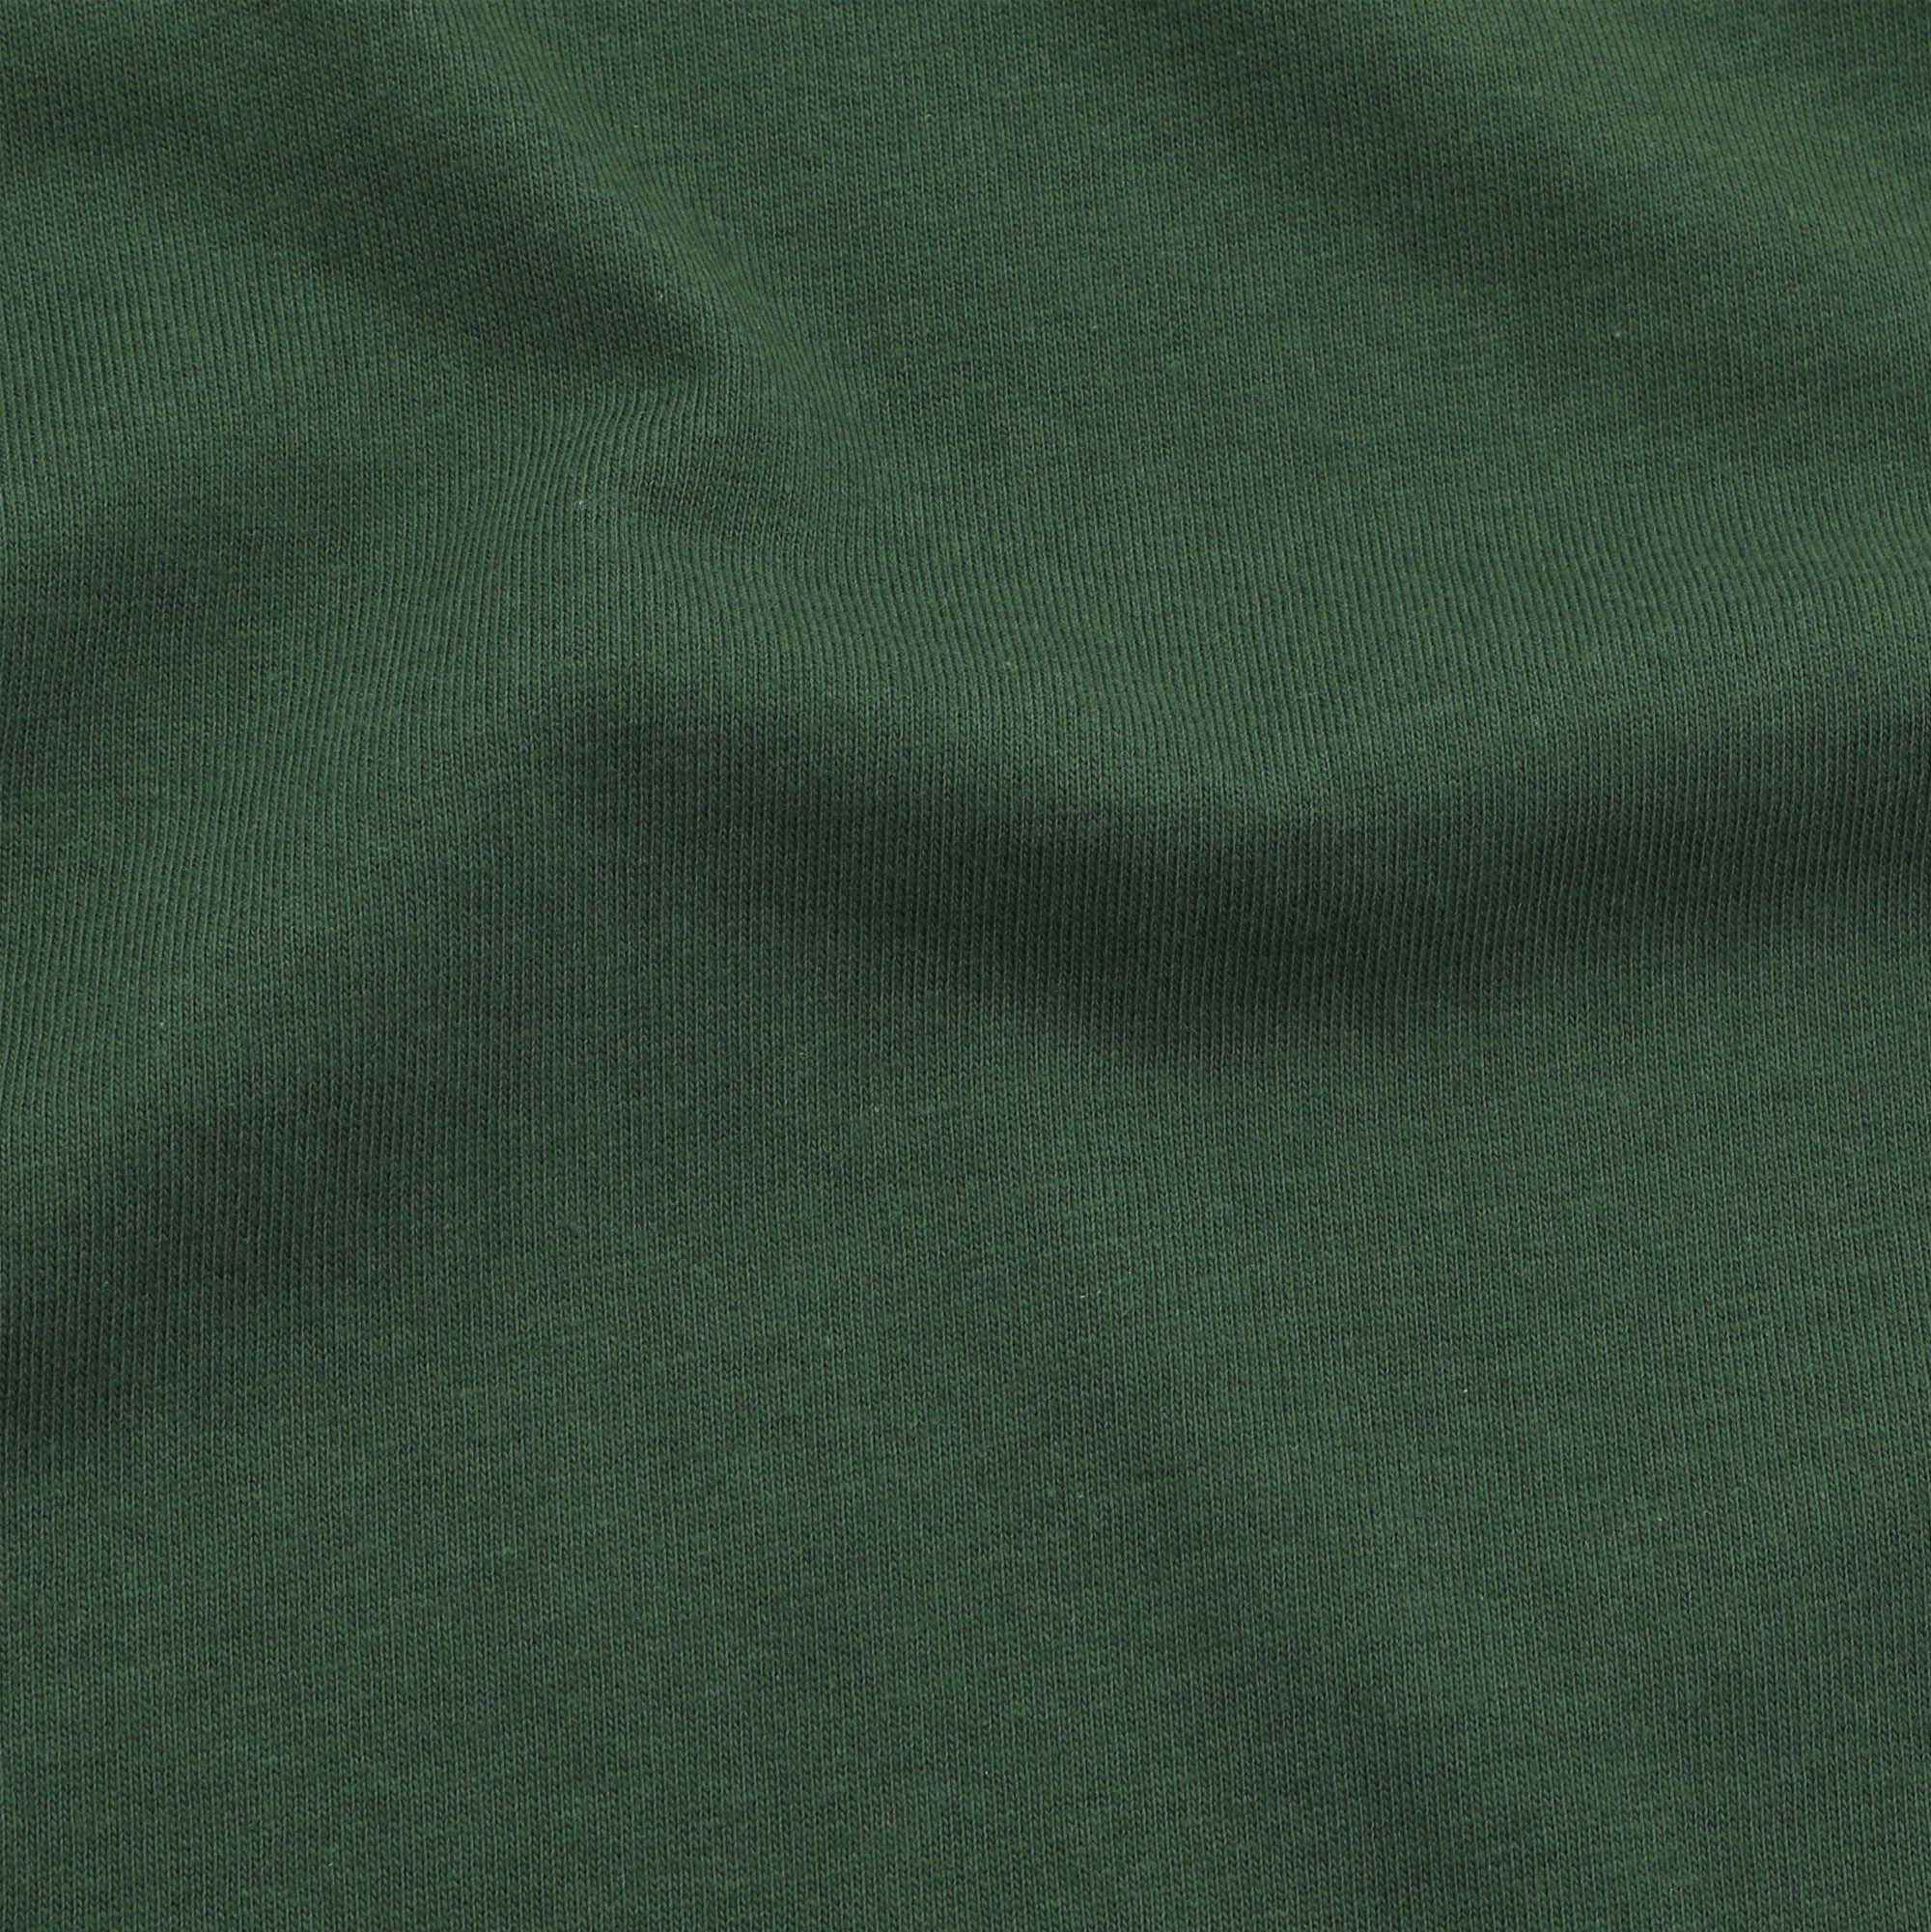 Cotton T-Shirt - Green